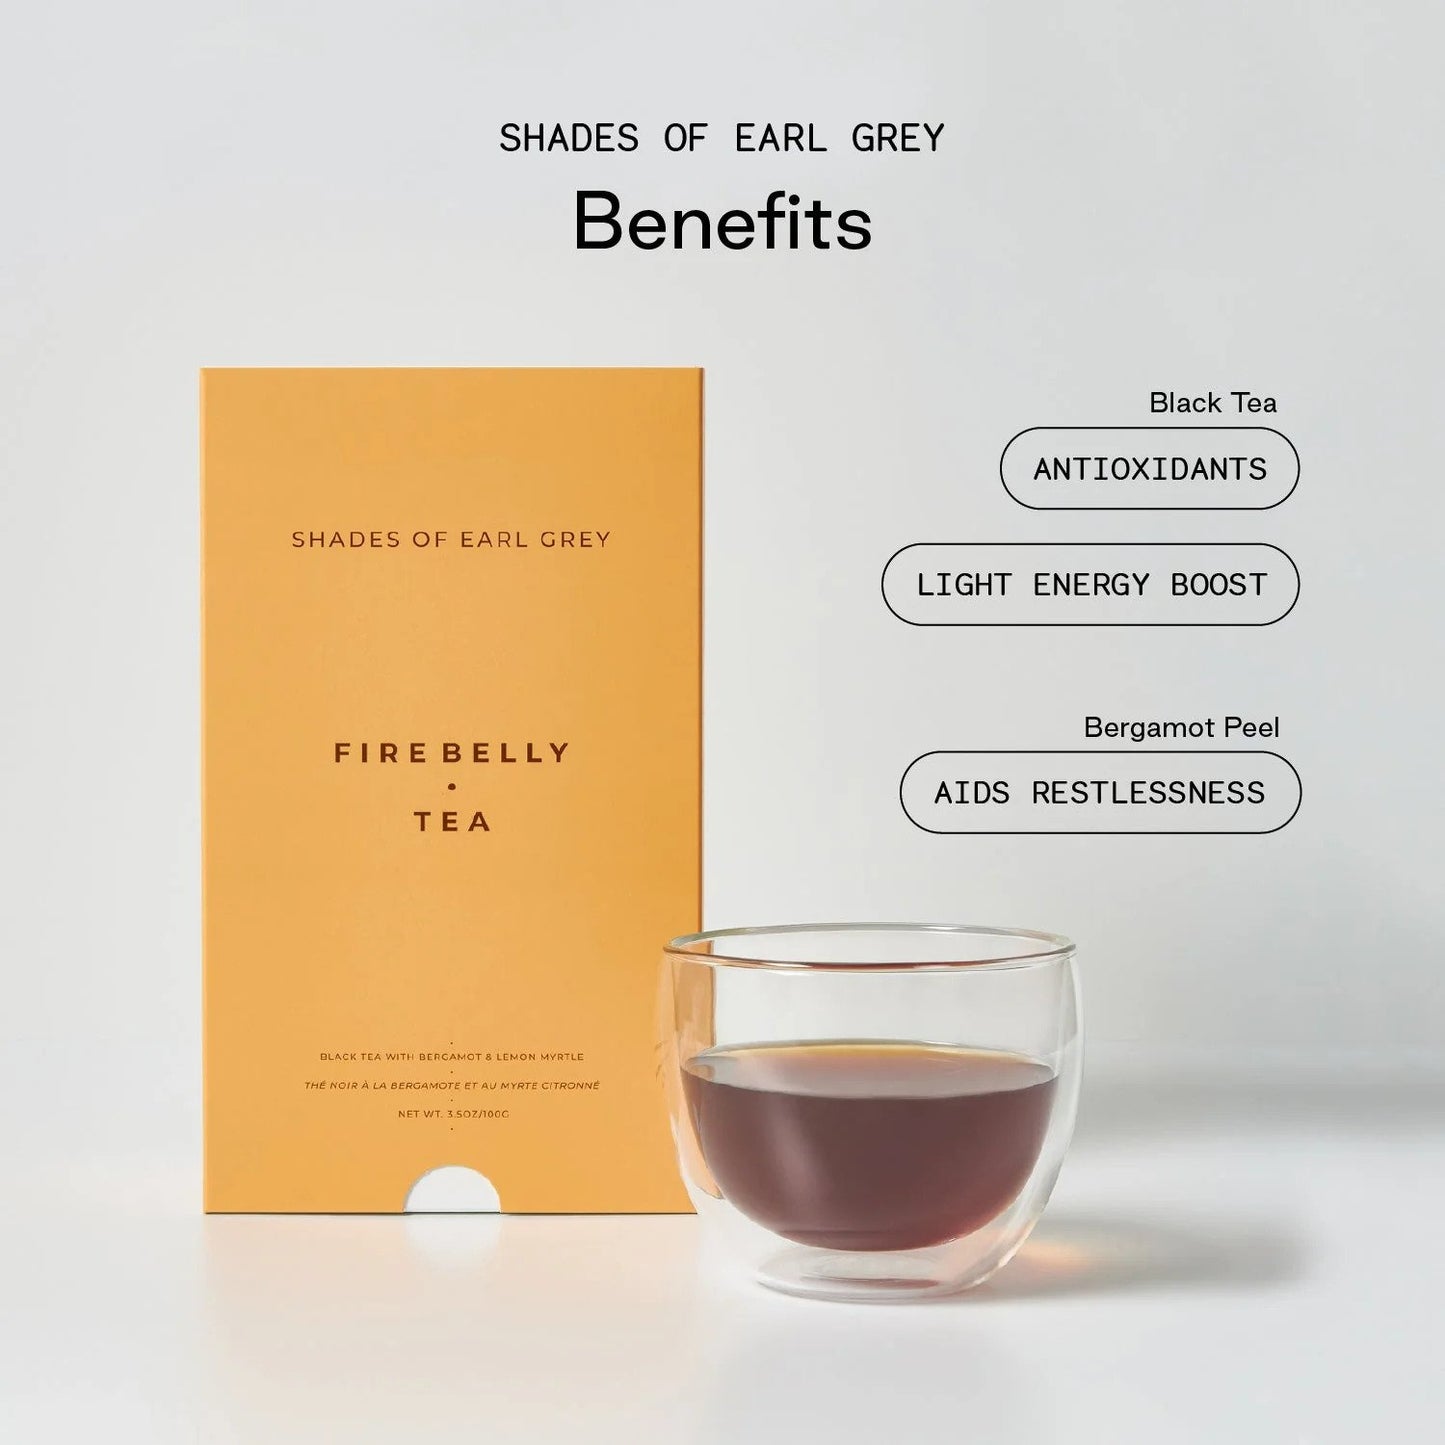 FireBelly Tea - NUANCES DE EARL GREY - 100g